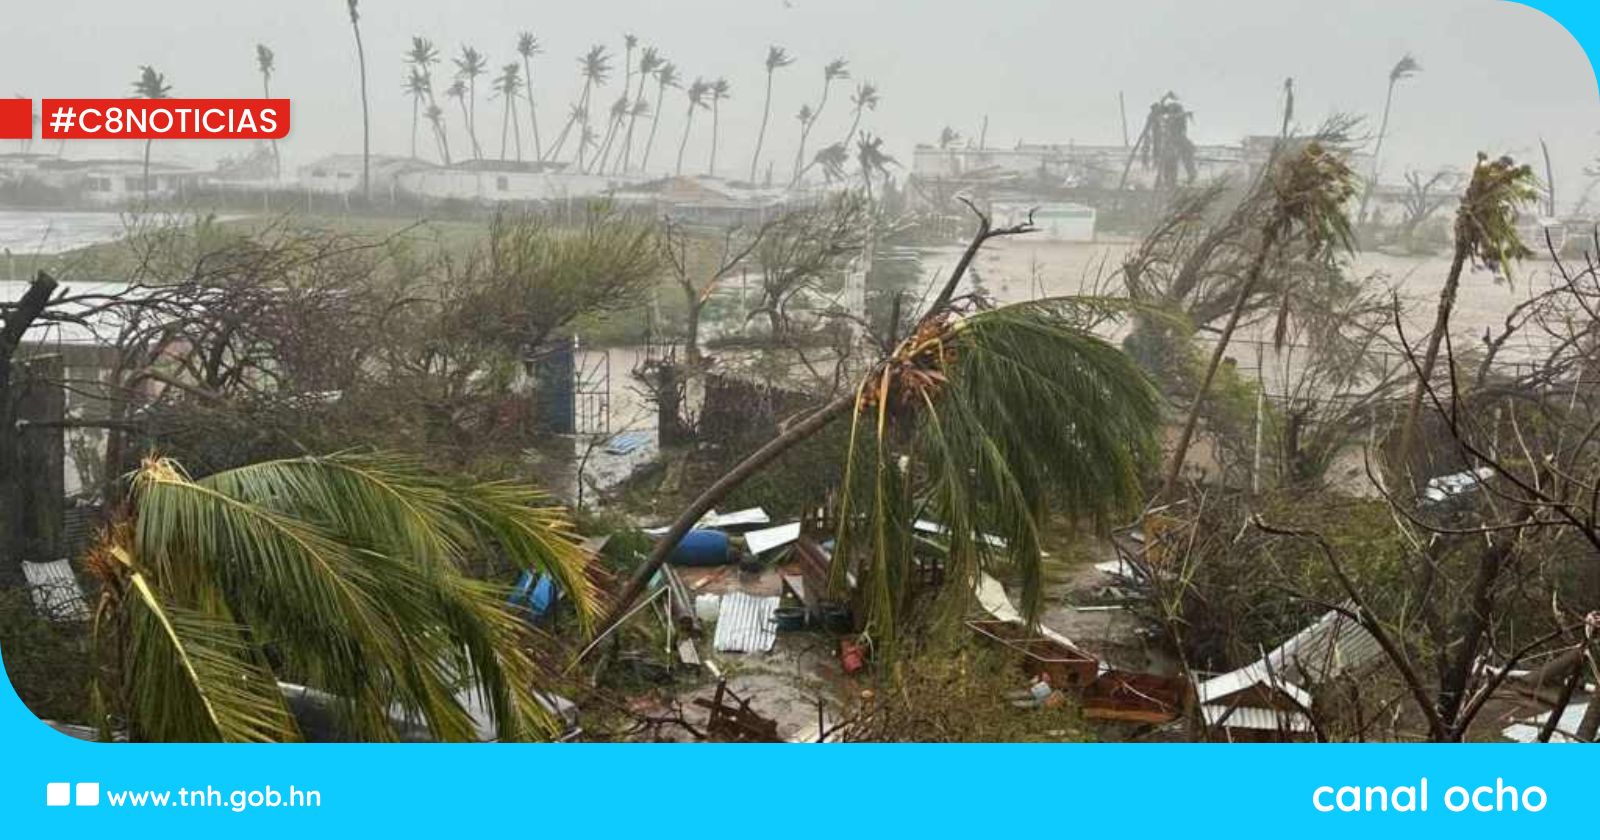 Primer ministro de Cuba envía mensaje de solidaridad ante el paso del huracán Beryl por el mar Caribe